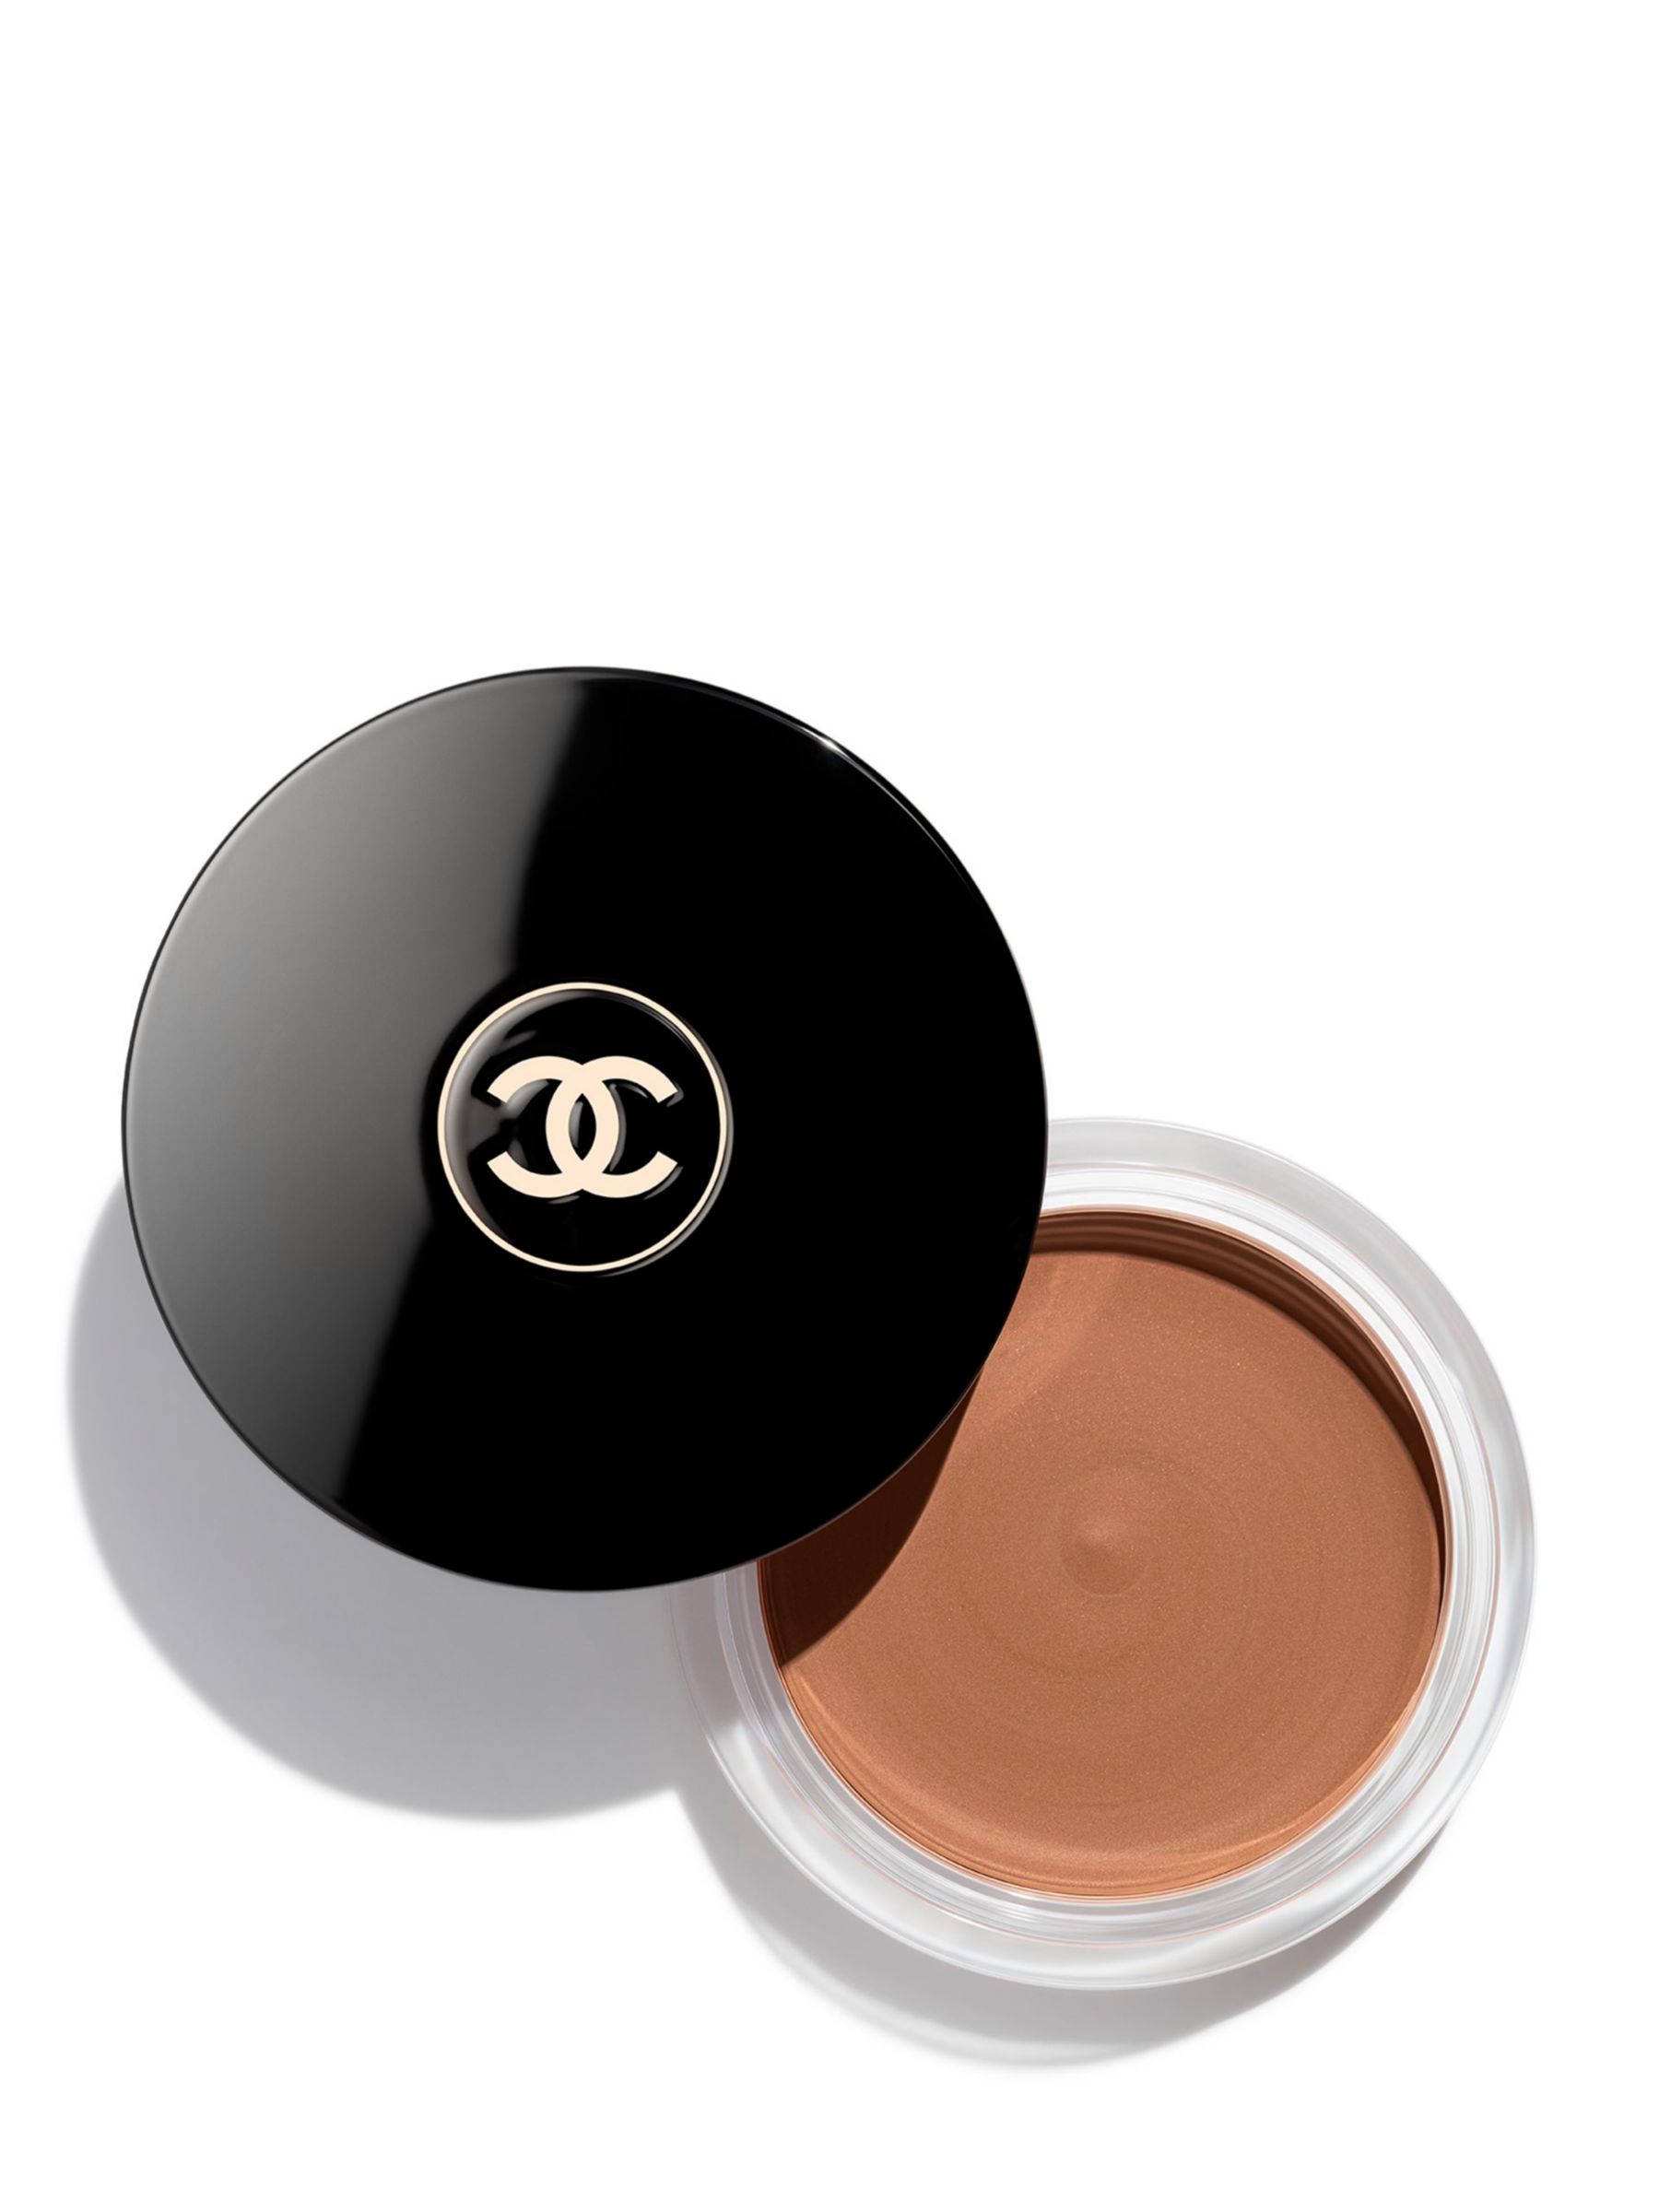 NEW! Chanel Les Beiges Healthy Glow Cream Bronzer 392 Medium Bronze Plus  Oversized Sunkissed Powder 